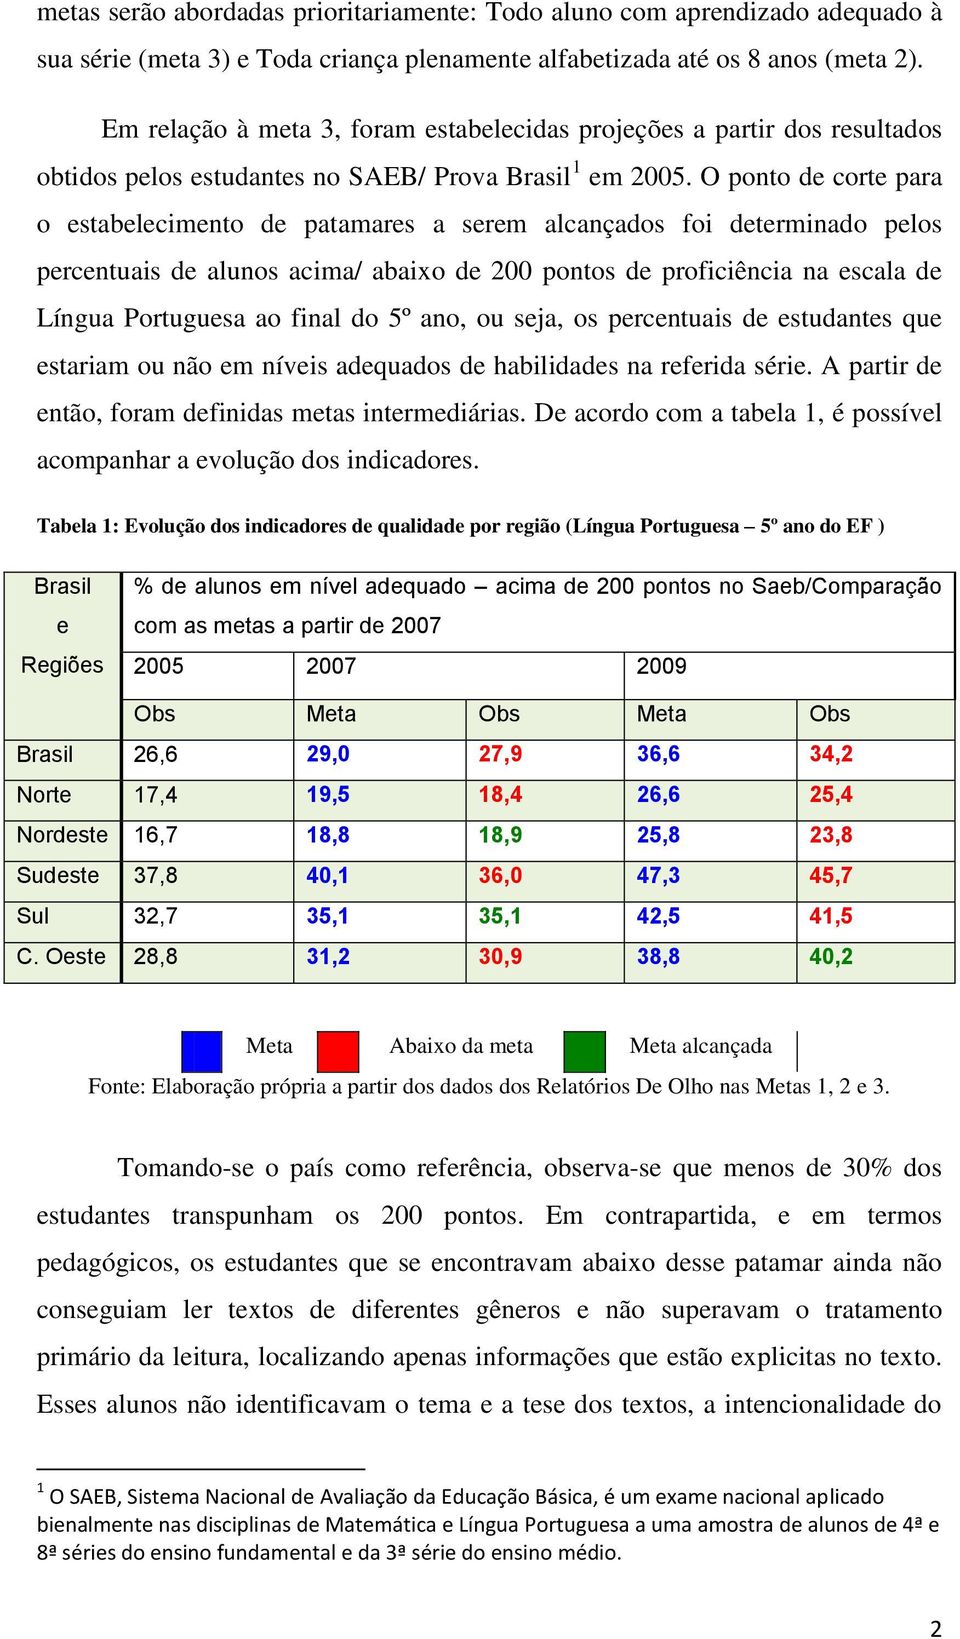 O ponto de corte para o estabelecimento de patamares a serem alcançados foi determinado pelos percentuais de alunos acima/ abaixo de 200 pontos de proficiência na escala de Língua Portuguesa ao final